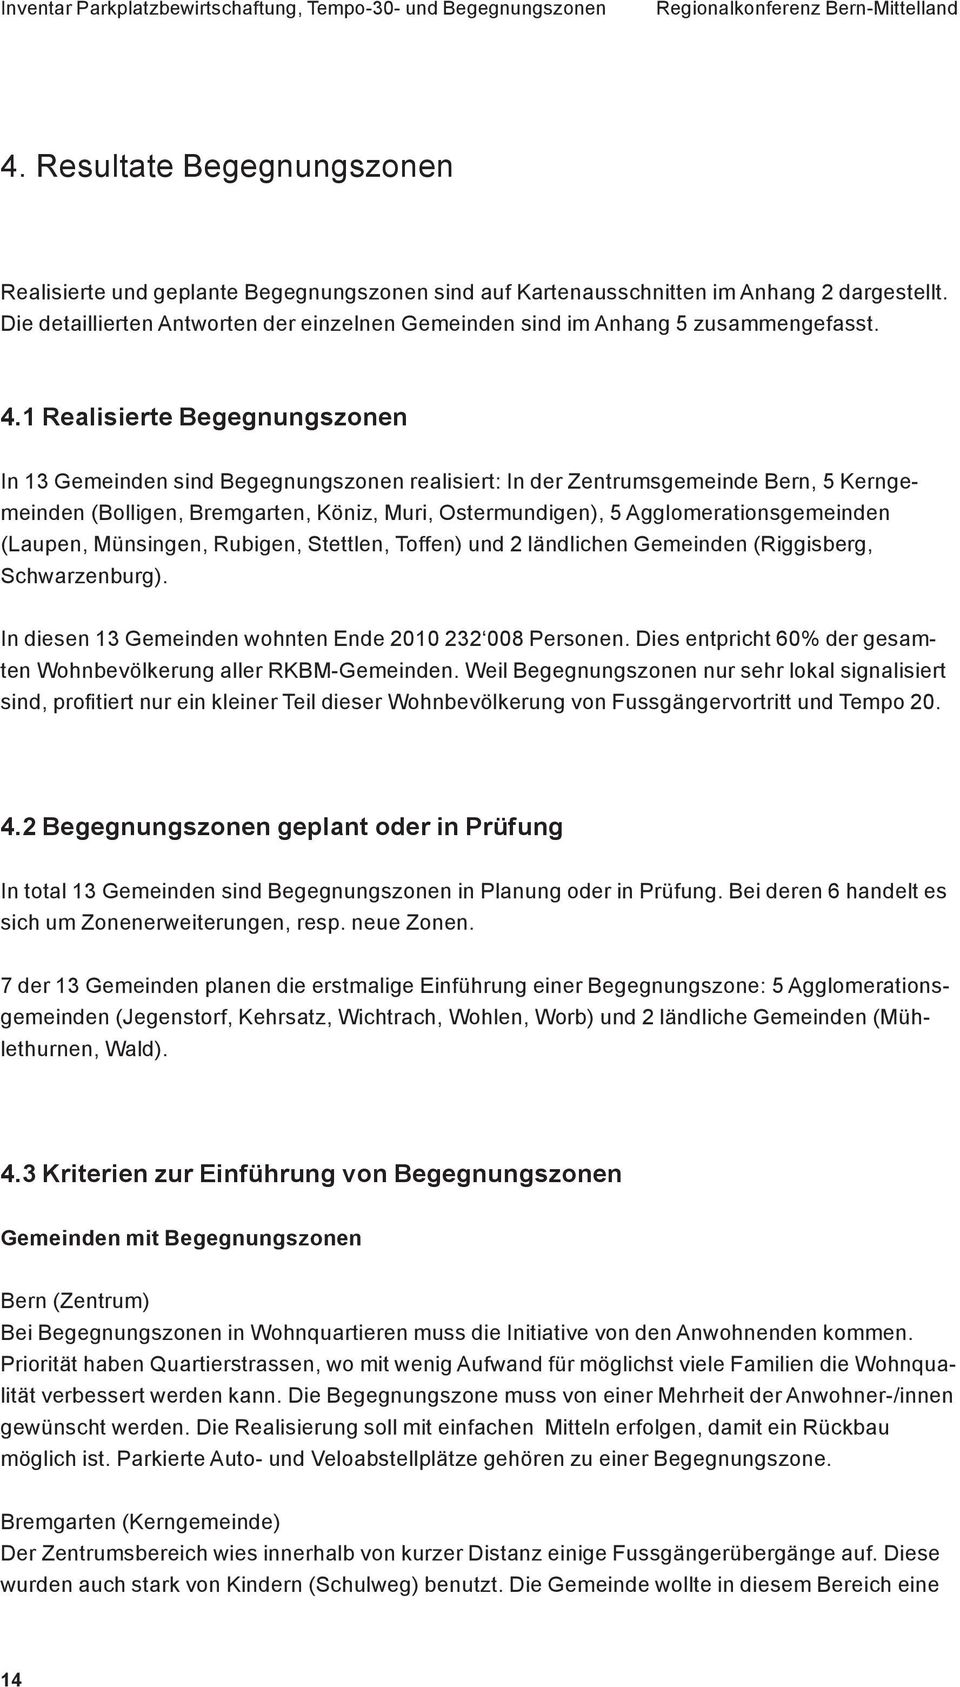 1 Realisierte Begegnungszonen In 13 Gemeinden sind Begegnungszonen realisiert: In der Zentrumsgemeinde Bern, 5 Kerngemeinden (Bolligen, Bremgarten, Köniz, Muri, Ostermundigen), 5